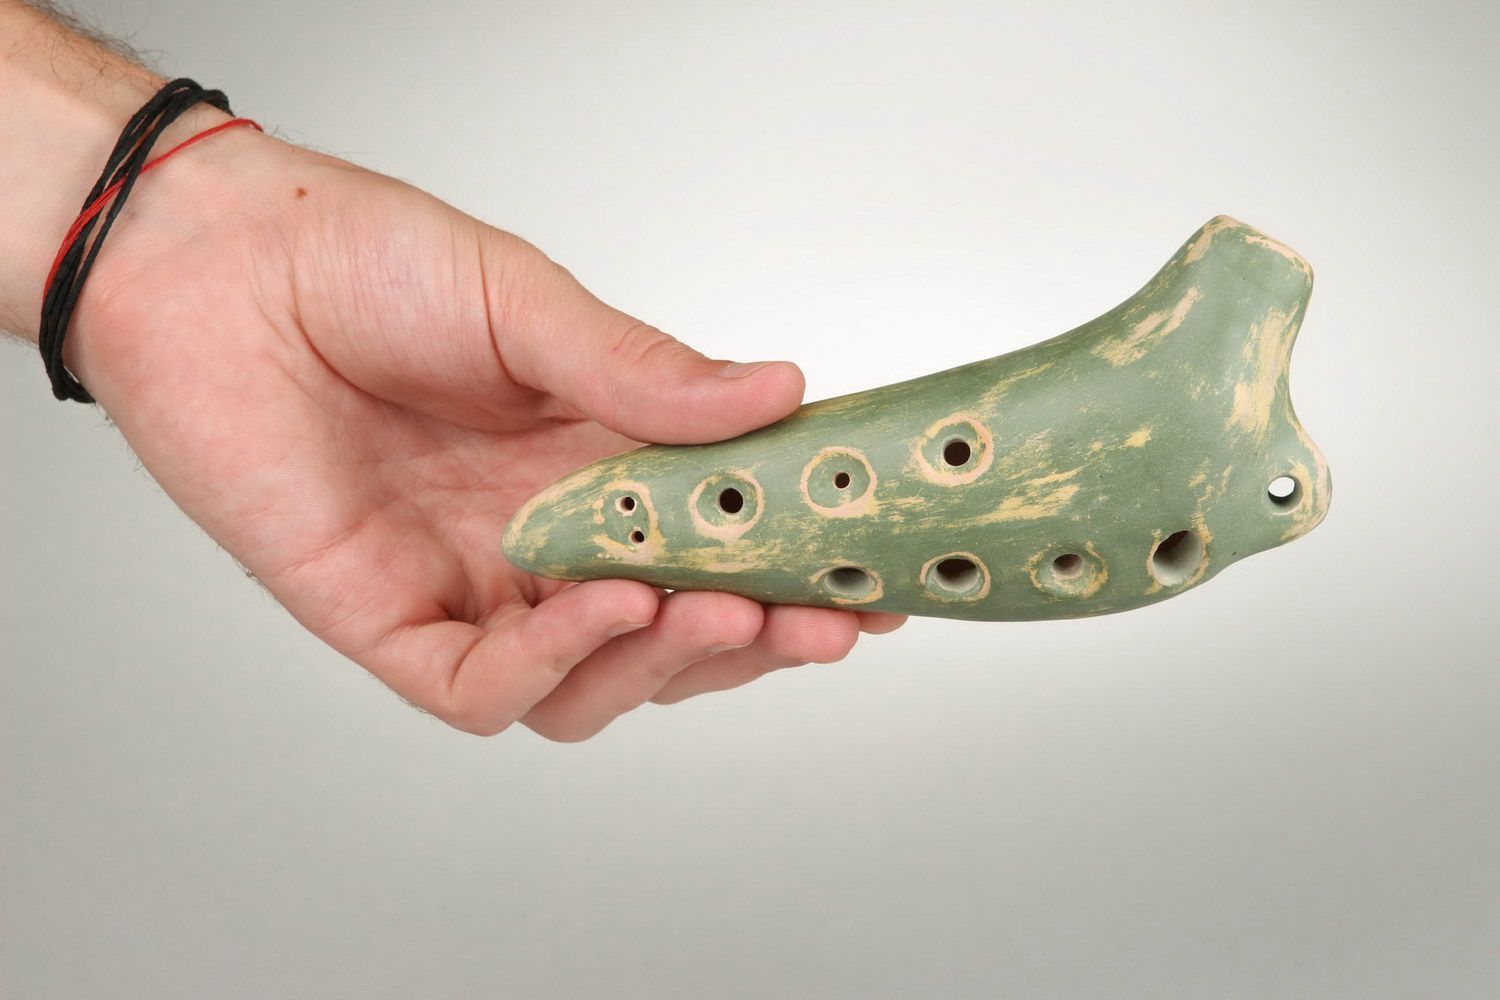 Ocarina de cerámica, flauta-silbato con ocho agujeros foto 5